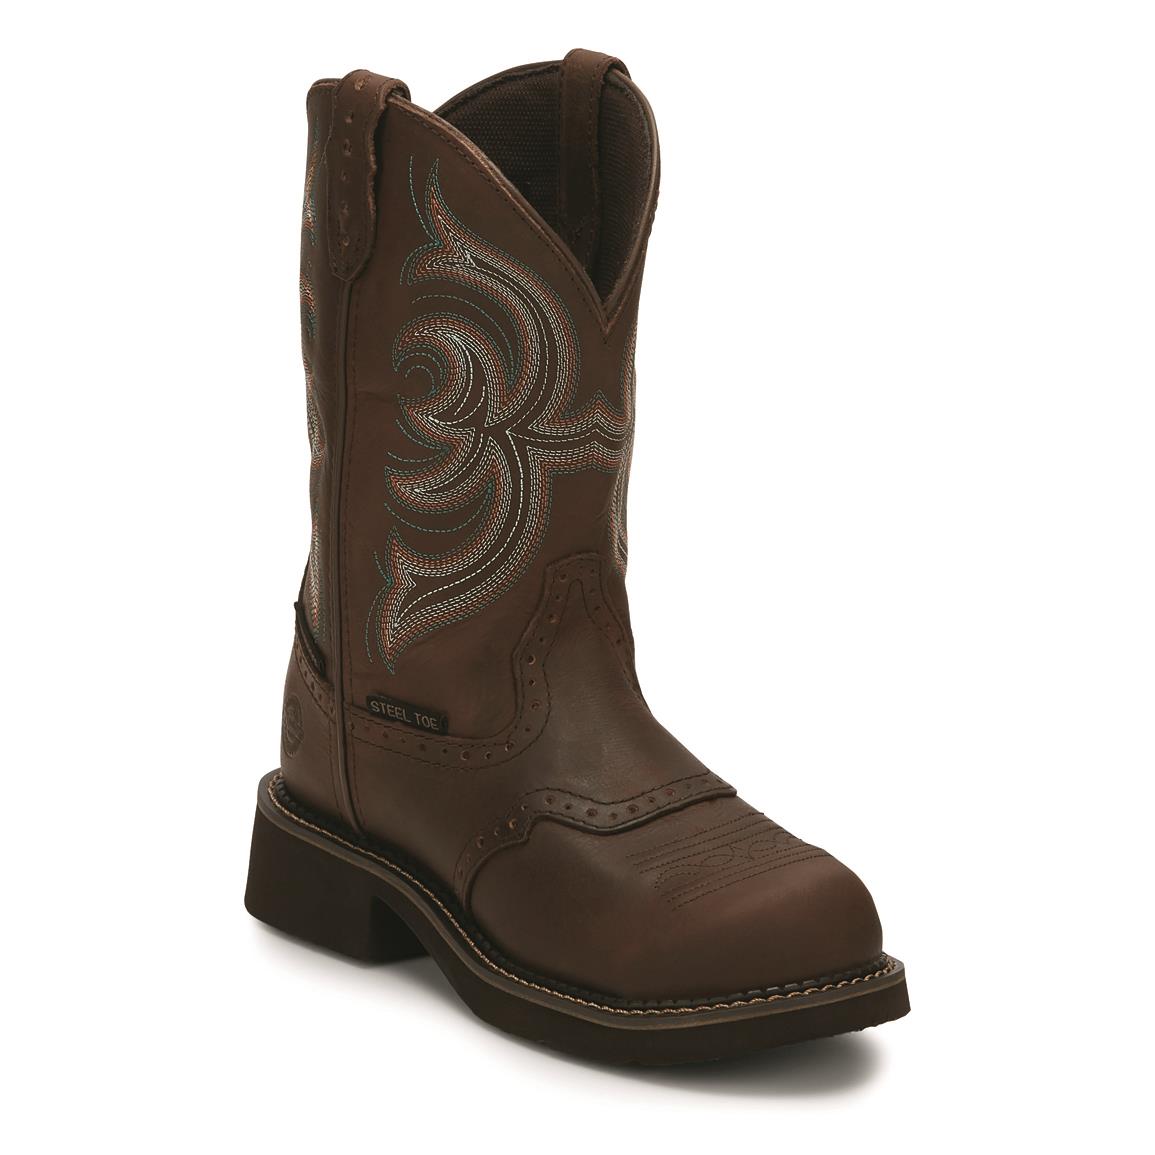 Justin Women's Wanette Waterproof 11-inch Pull-on Steel Toe Western Work Boots